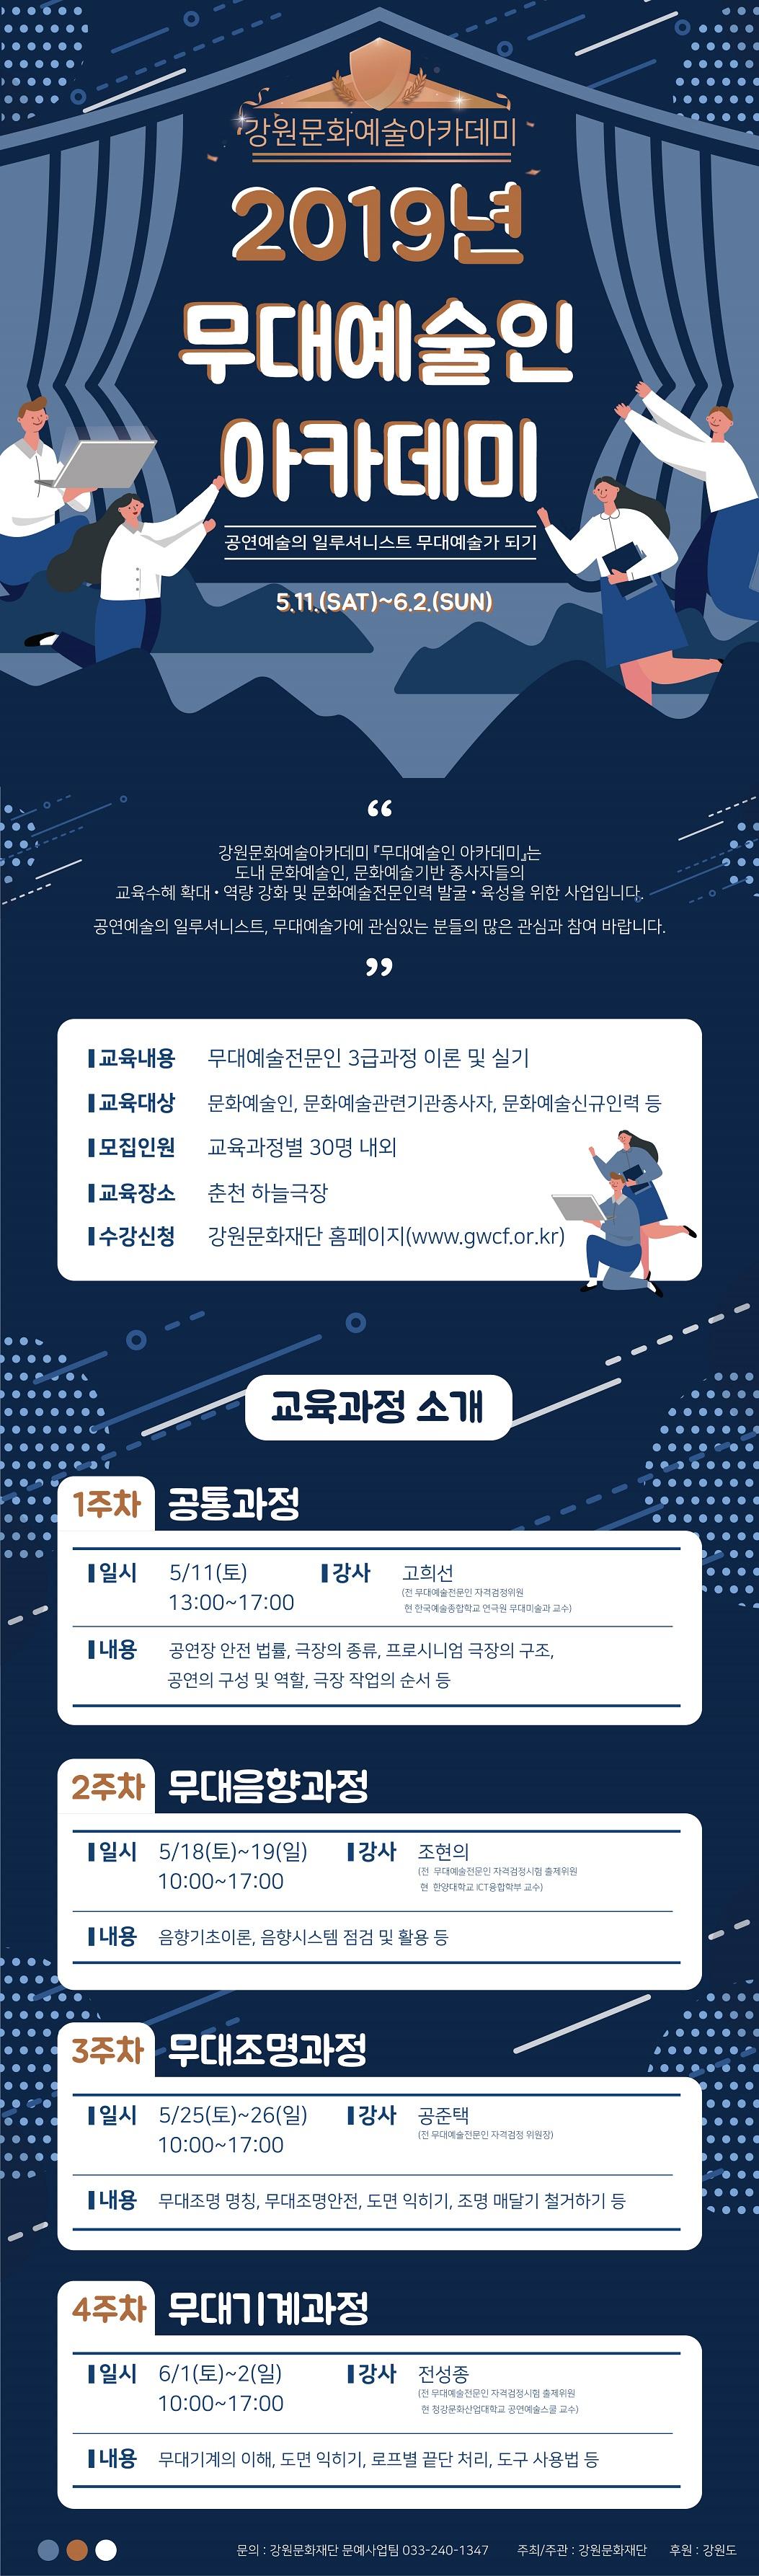 강원문화예술아카데미 2019년 무대예술인아카데미